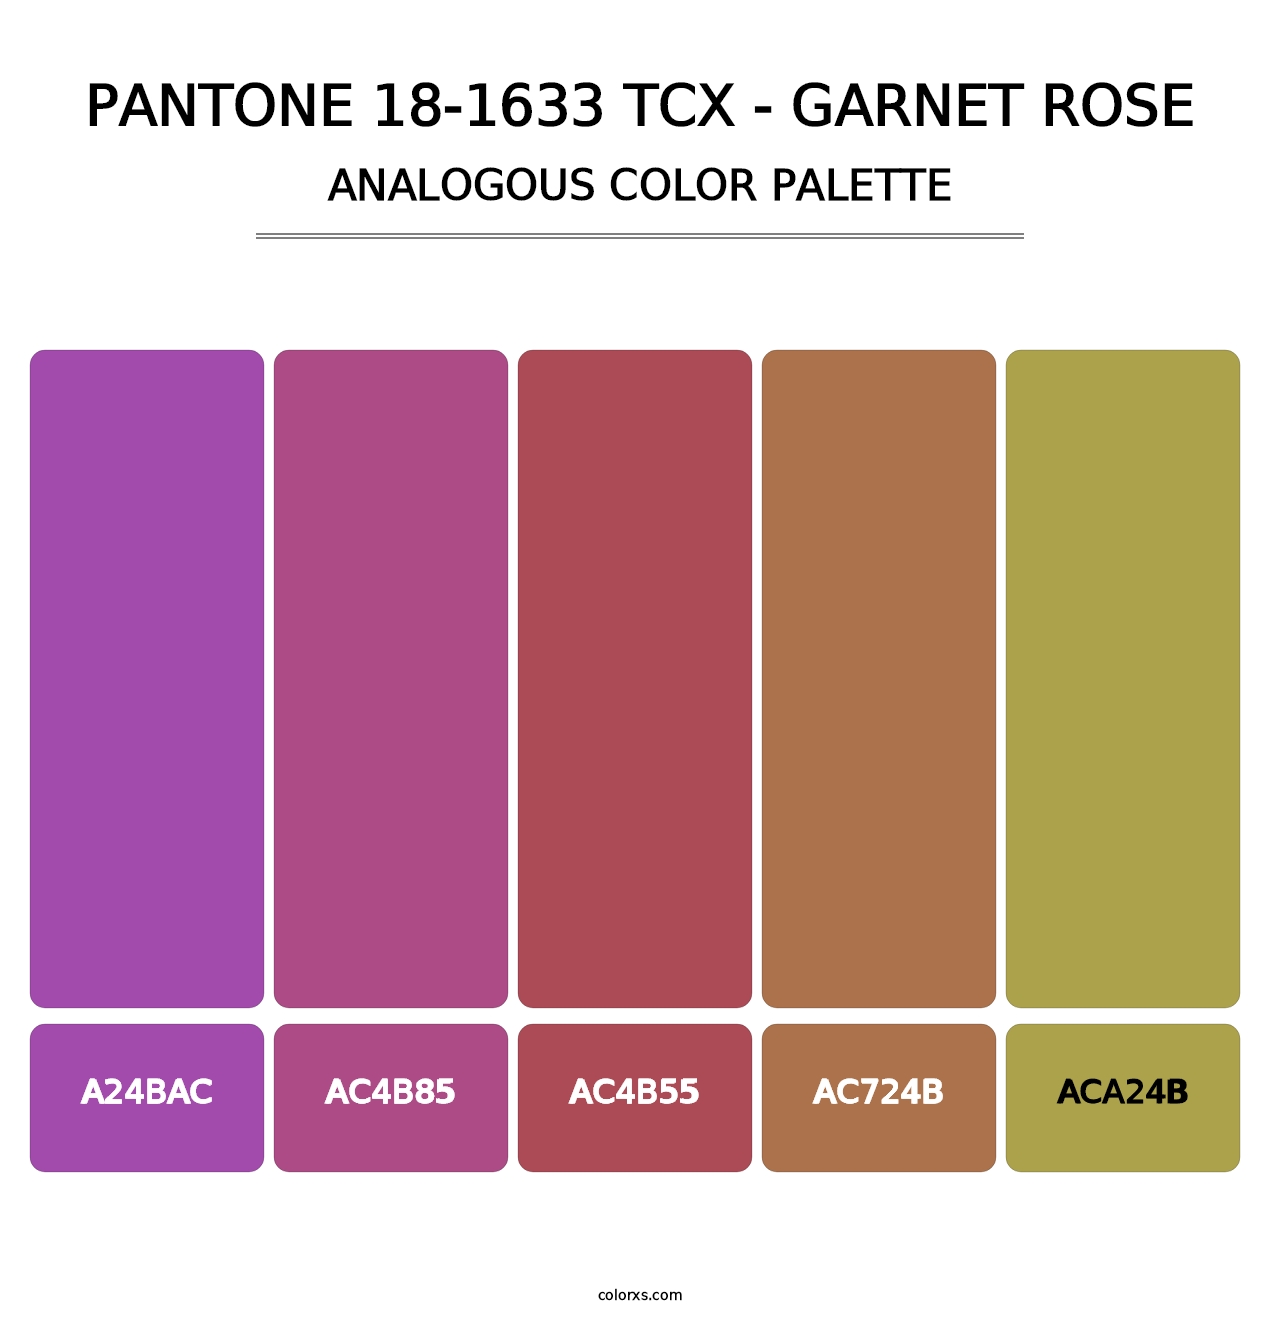 PANTONE 18-1633 TCX - Garnet Rose - Analogous Color Palette